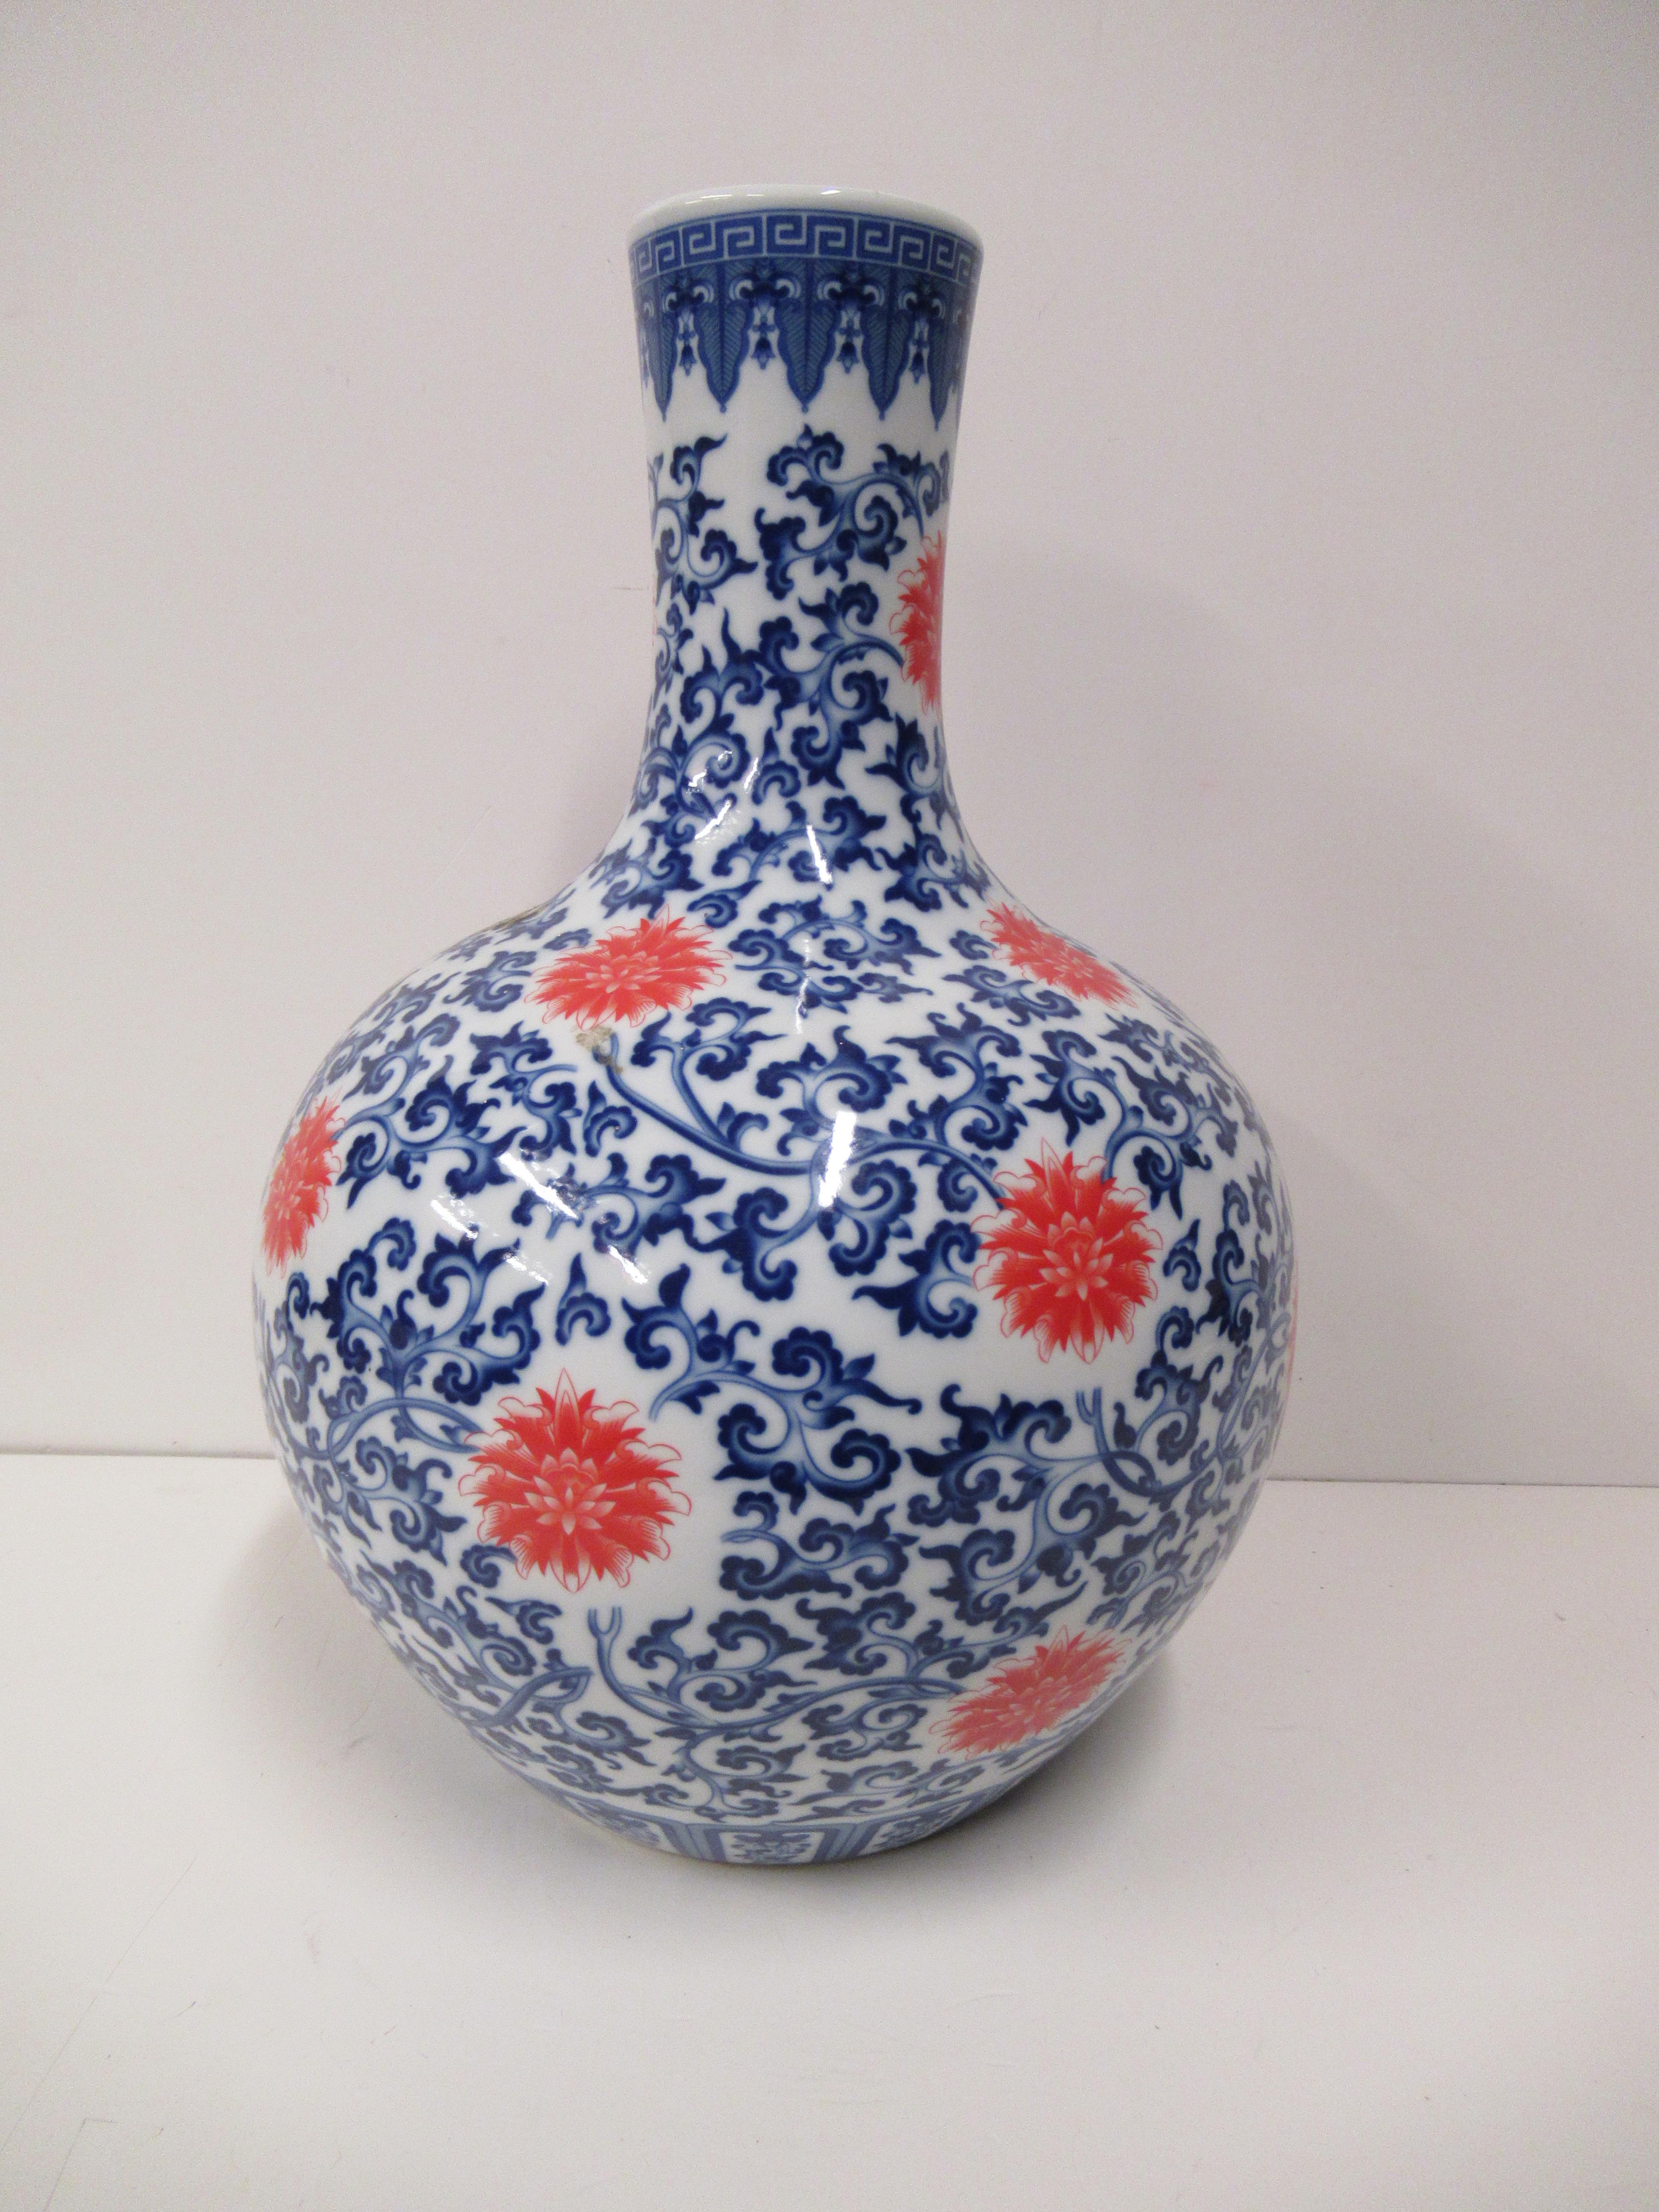 Bulbous Blue, White and Orange Vase (54cm tall)